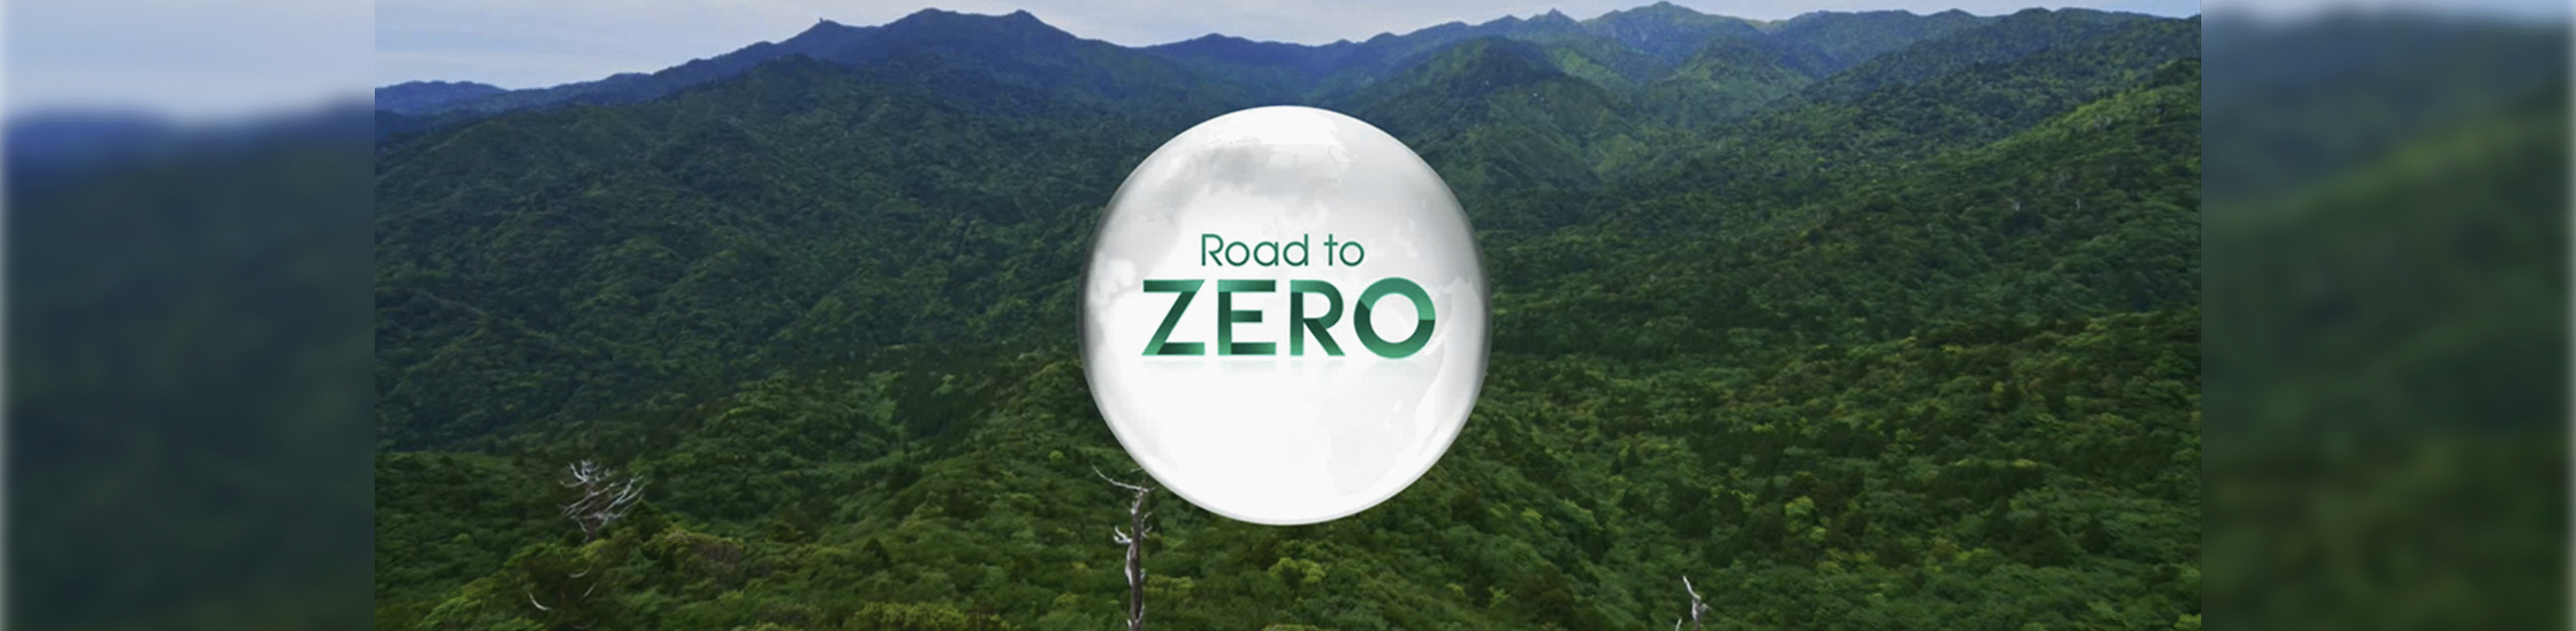 Лого на Road to Zero (Път към нулата)